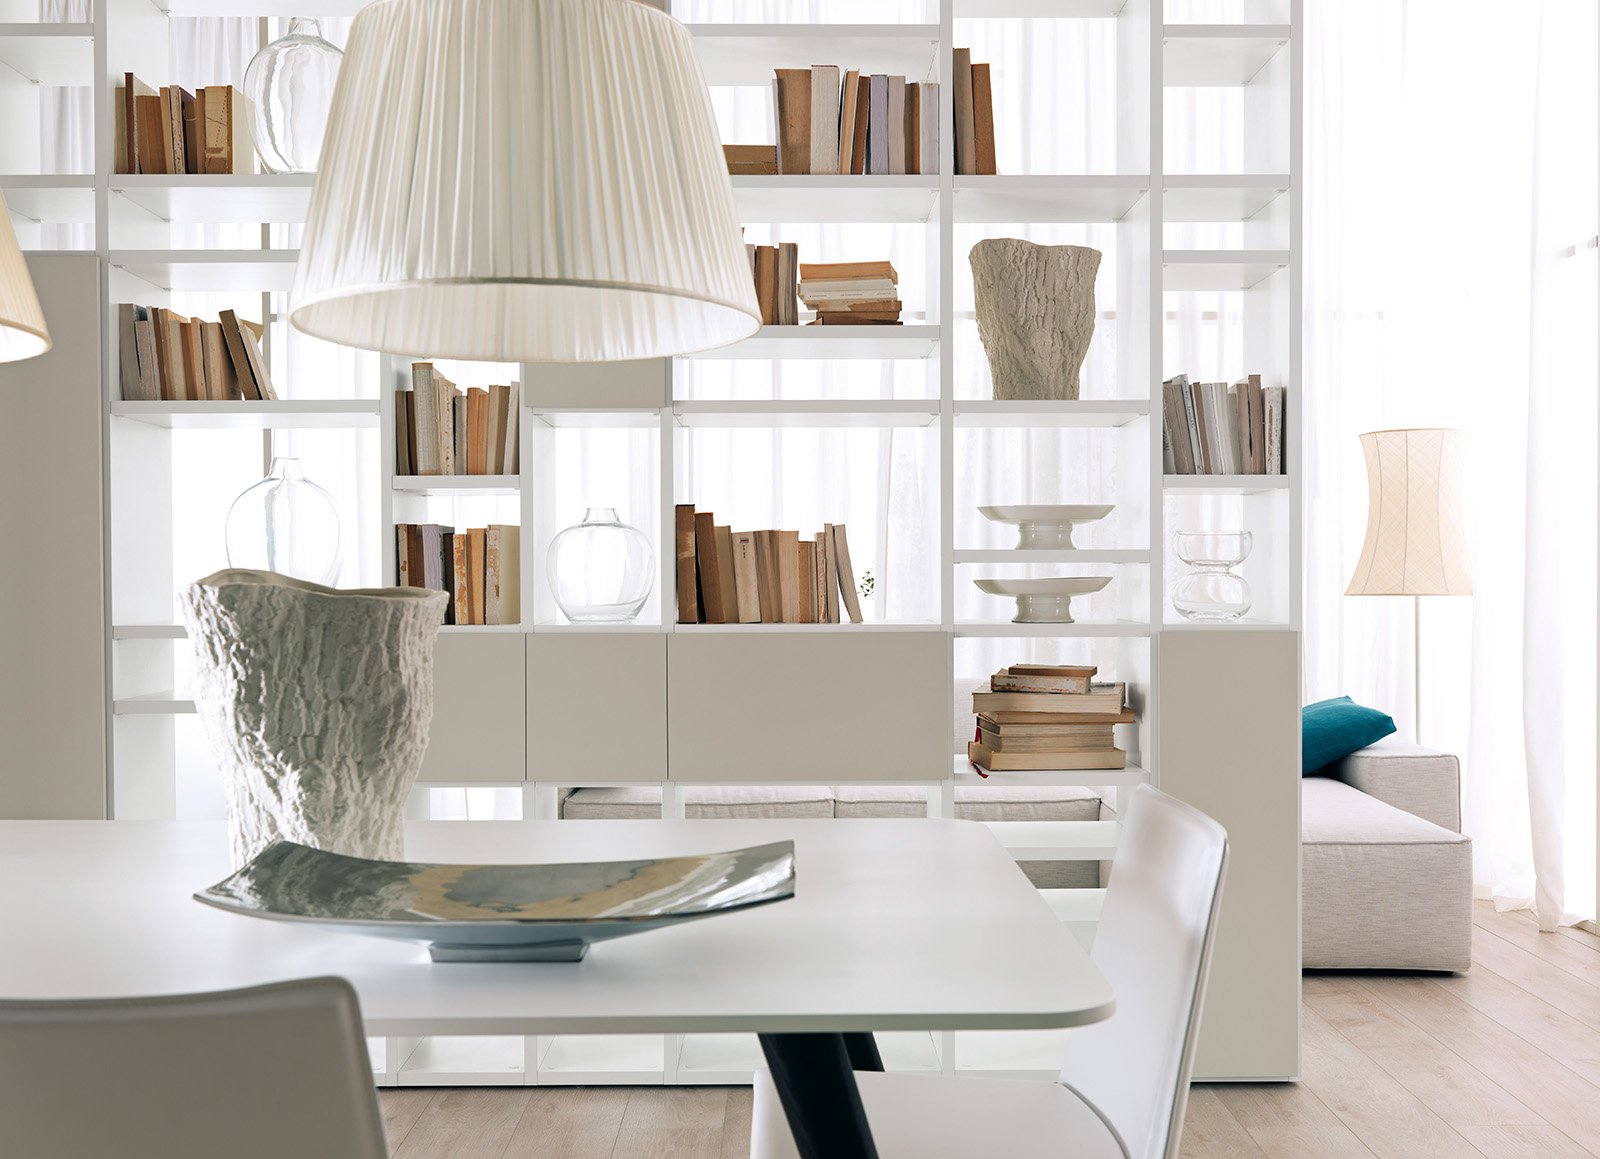 Librerie componibili i mobili pi importanti del for Mobili casa